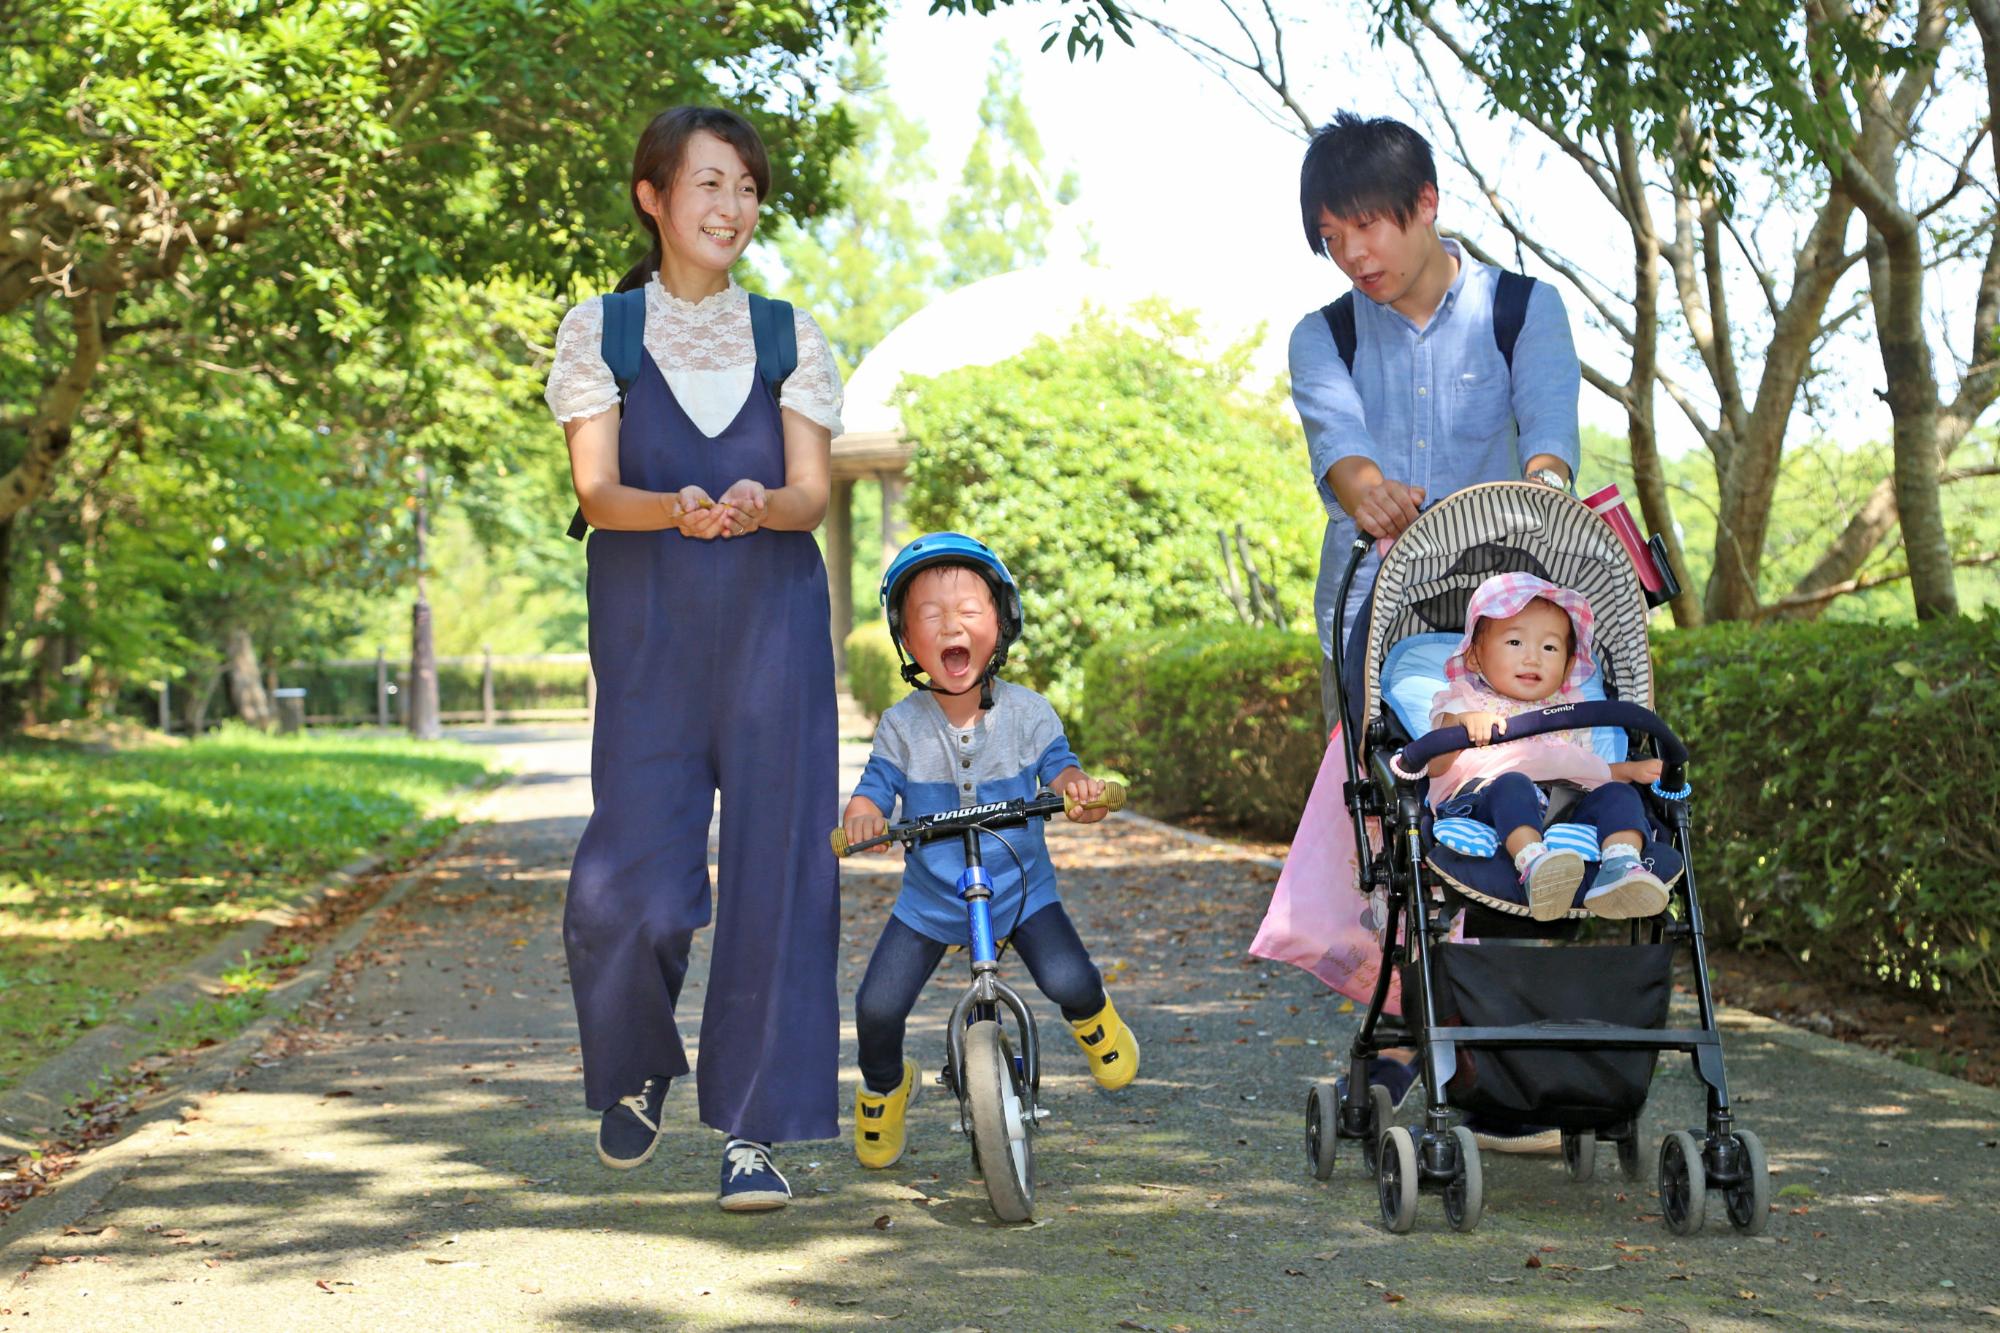 緑道を三輪車に乗った男の子、赤ちゃんの乗ったベビーカーを押すお父さん、お母さんが歩いている写真